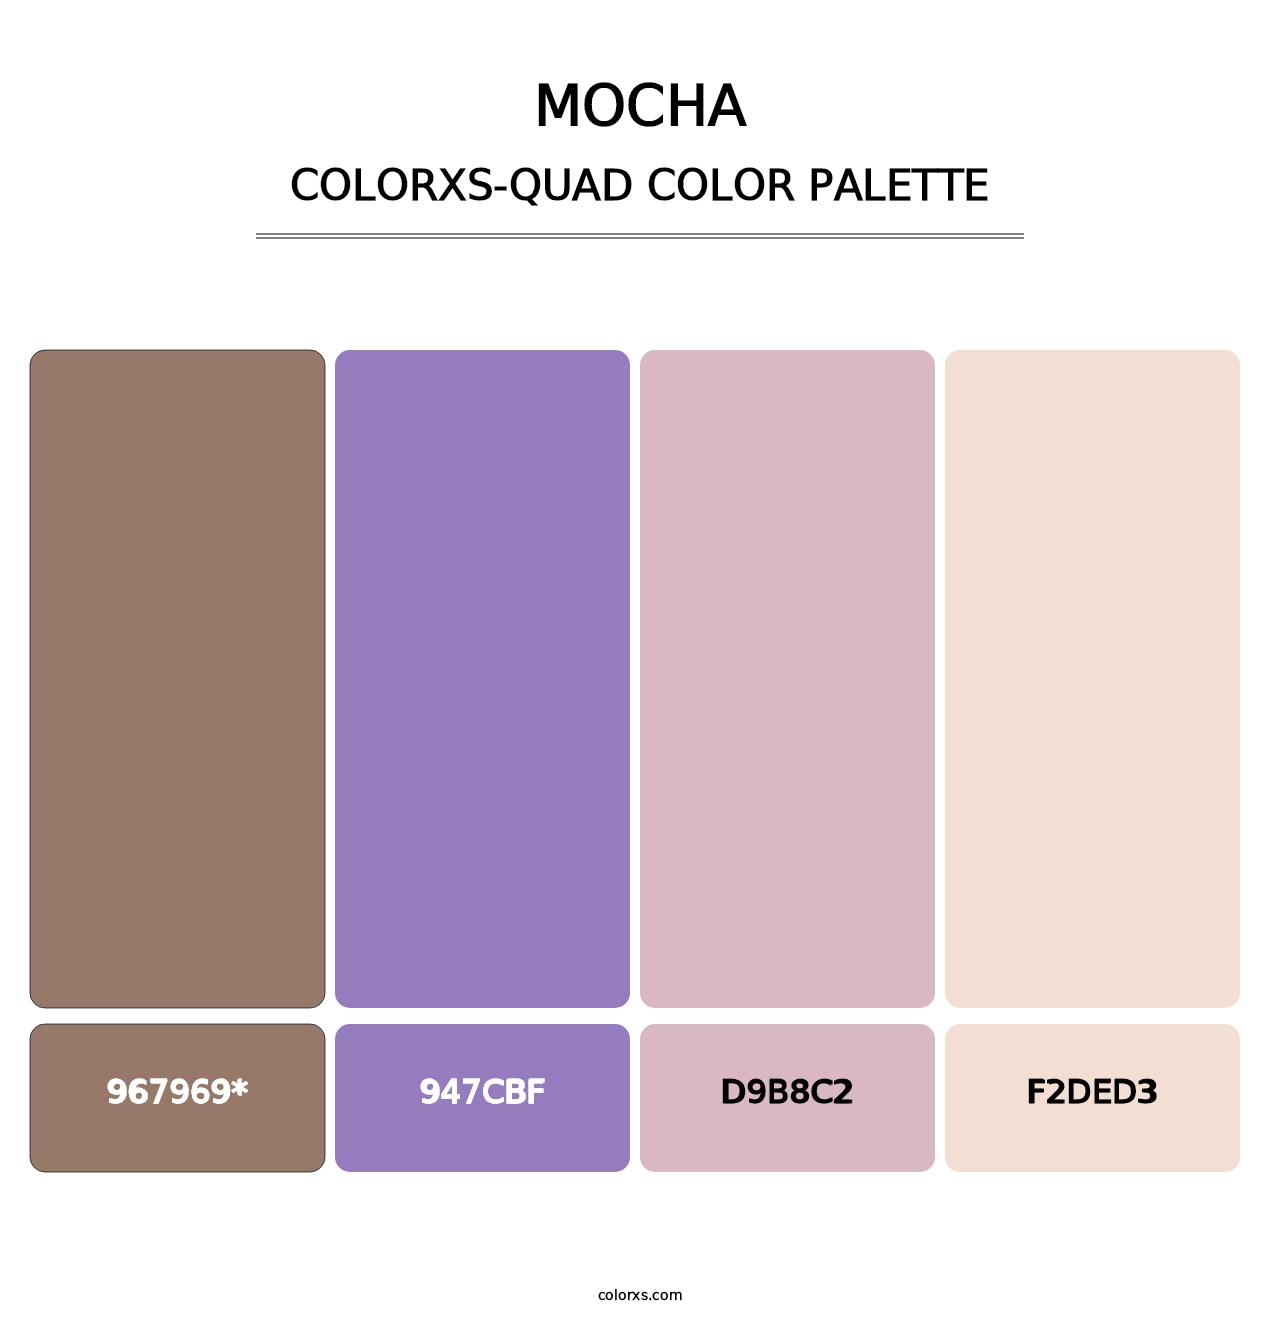 Mocha - Colorxs Quad Palette